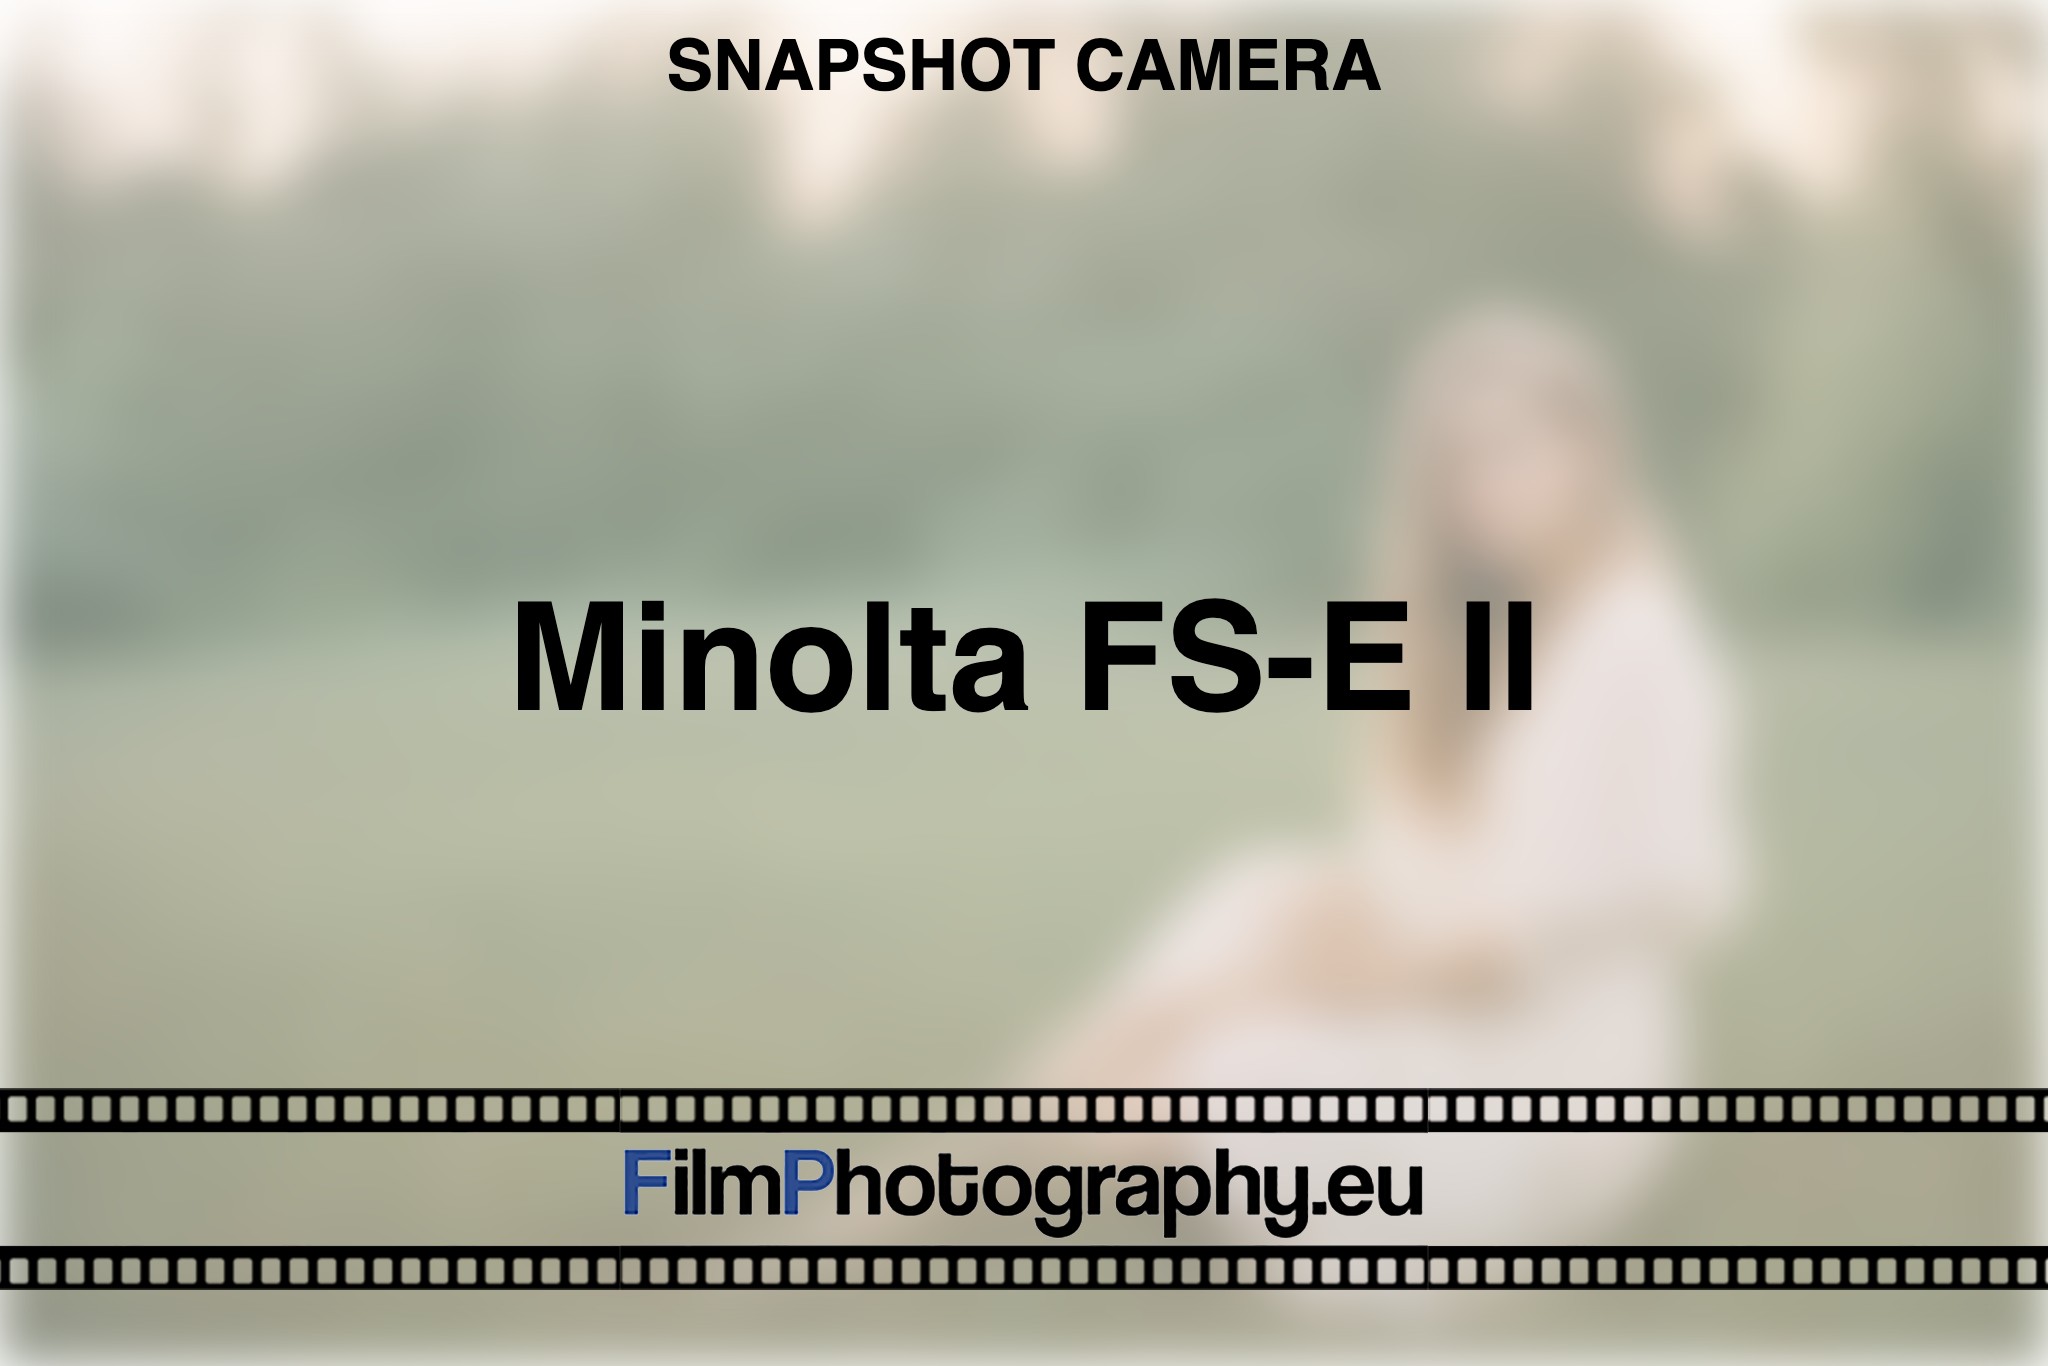 minolta-fs-e-ii-snapshot-camera-bnv